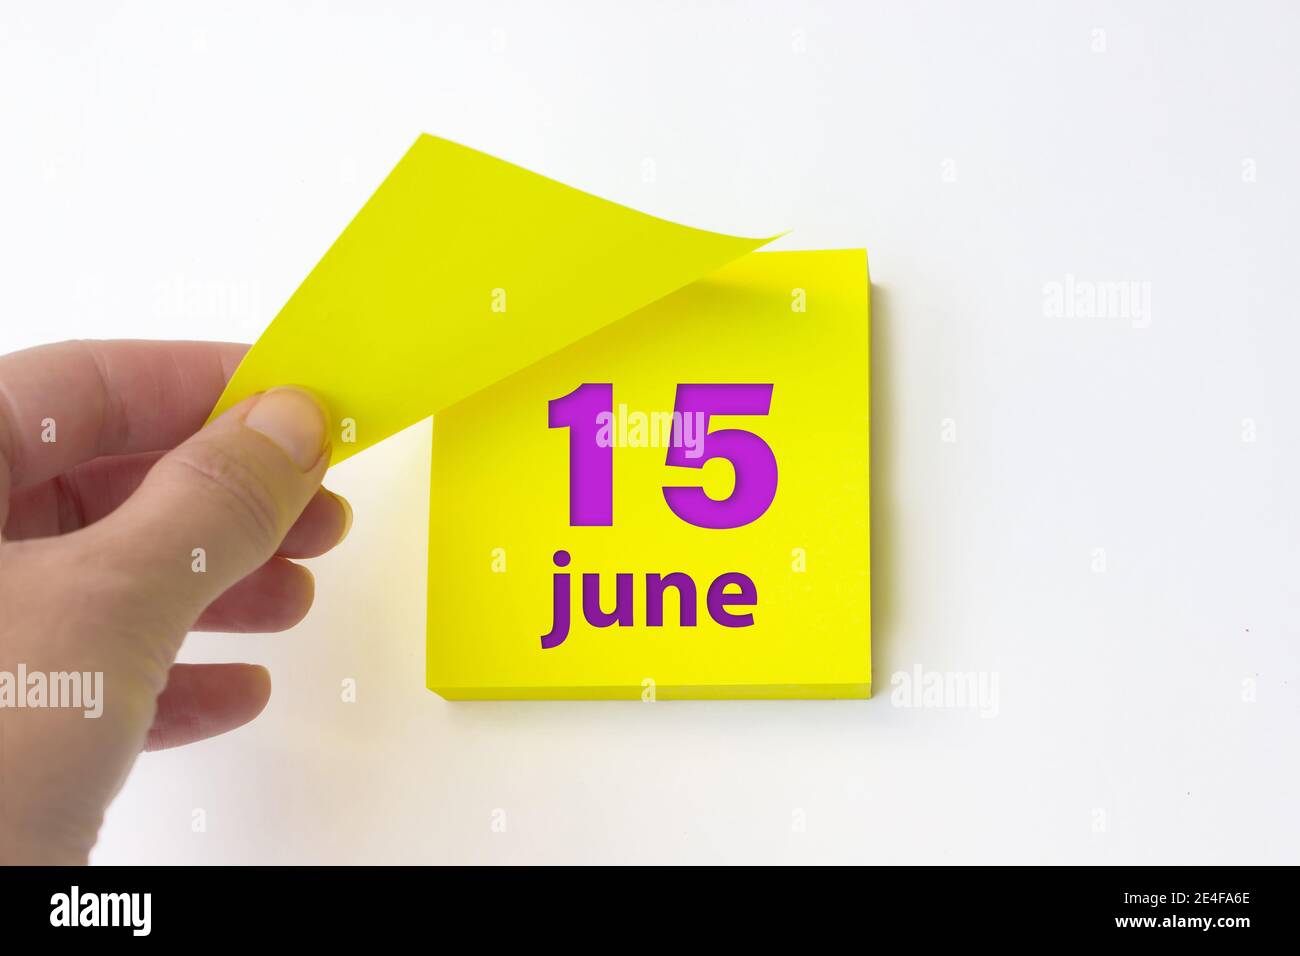 Juni. Tag 15 des Monats, Kalenderdatum. Die Hand reißt das gelbe Blatt des Kalenders ab. Sommer Monat, Tag des Jahres Konzept Stockfoto